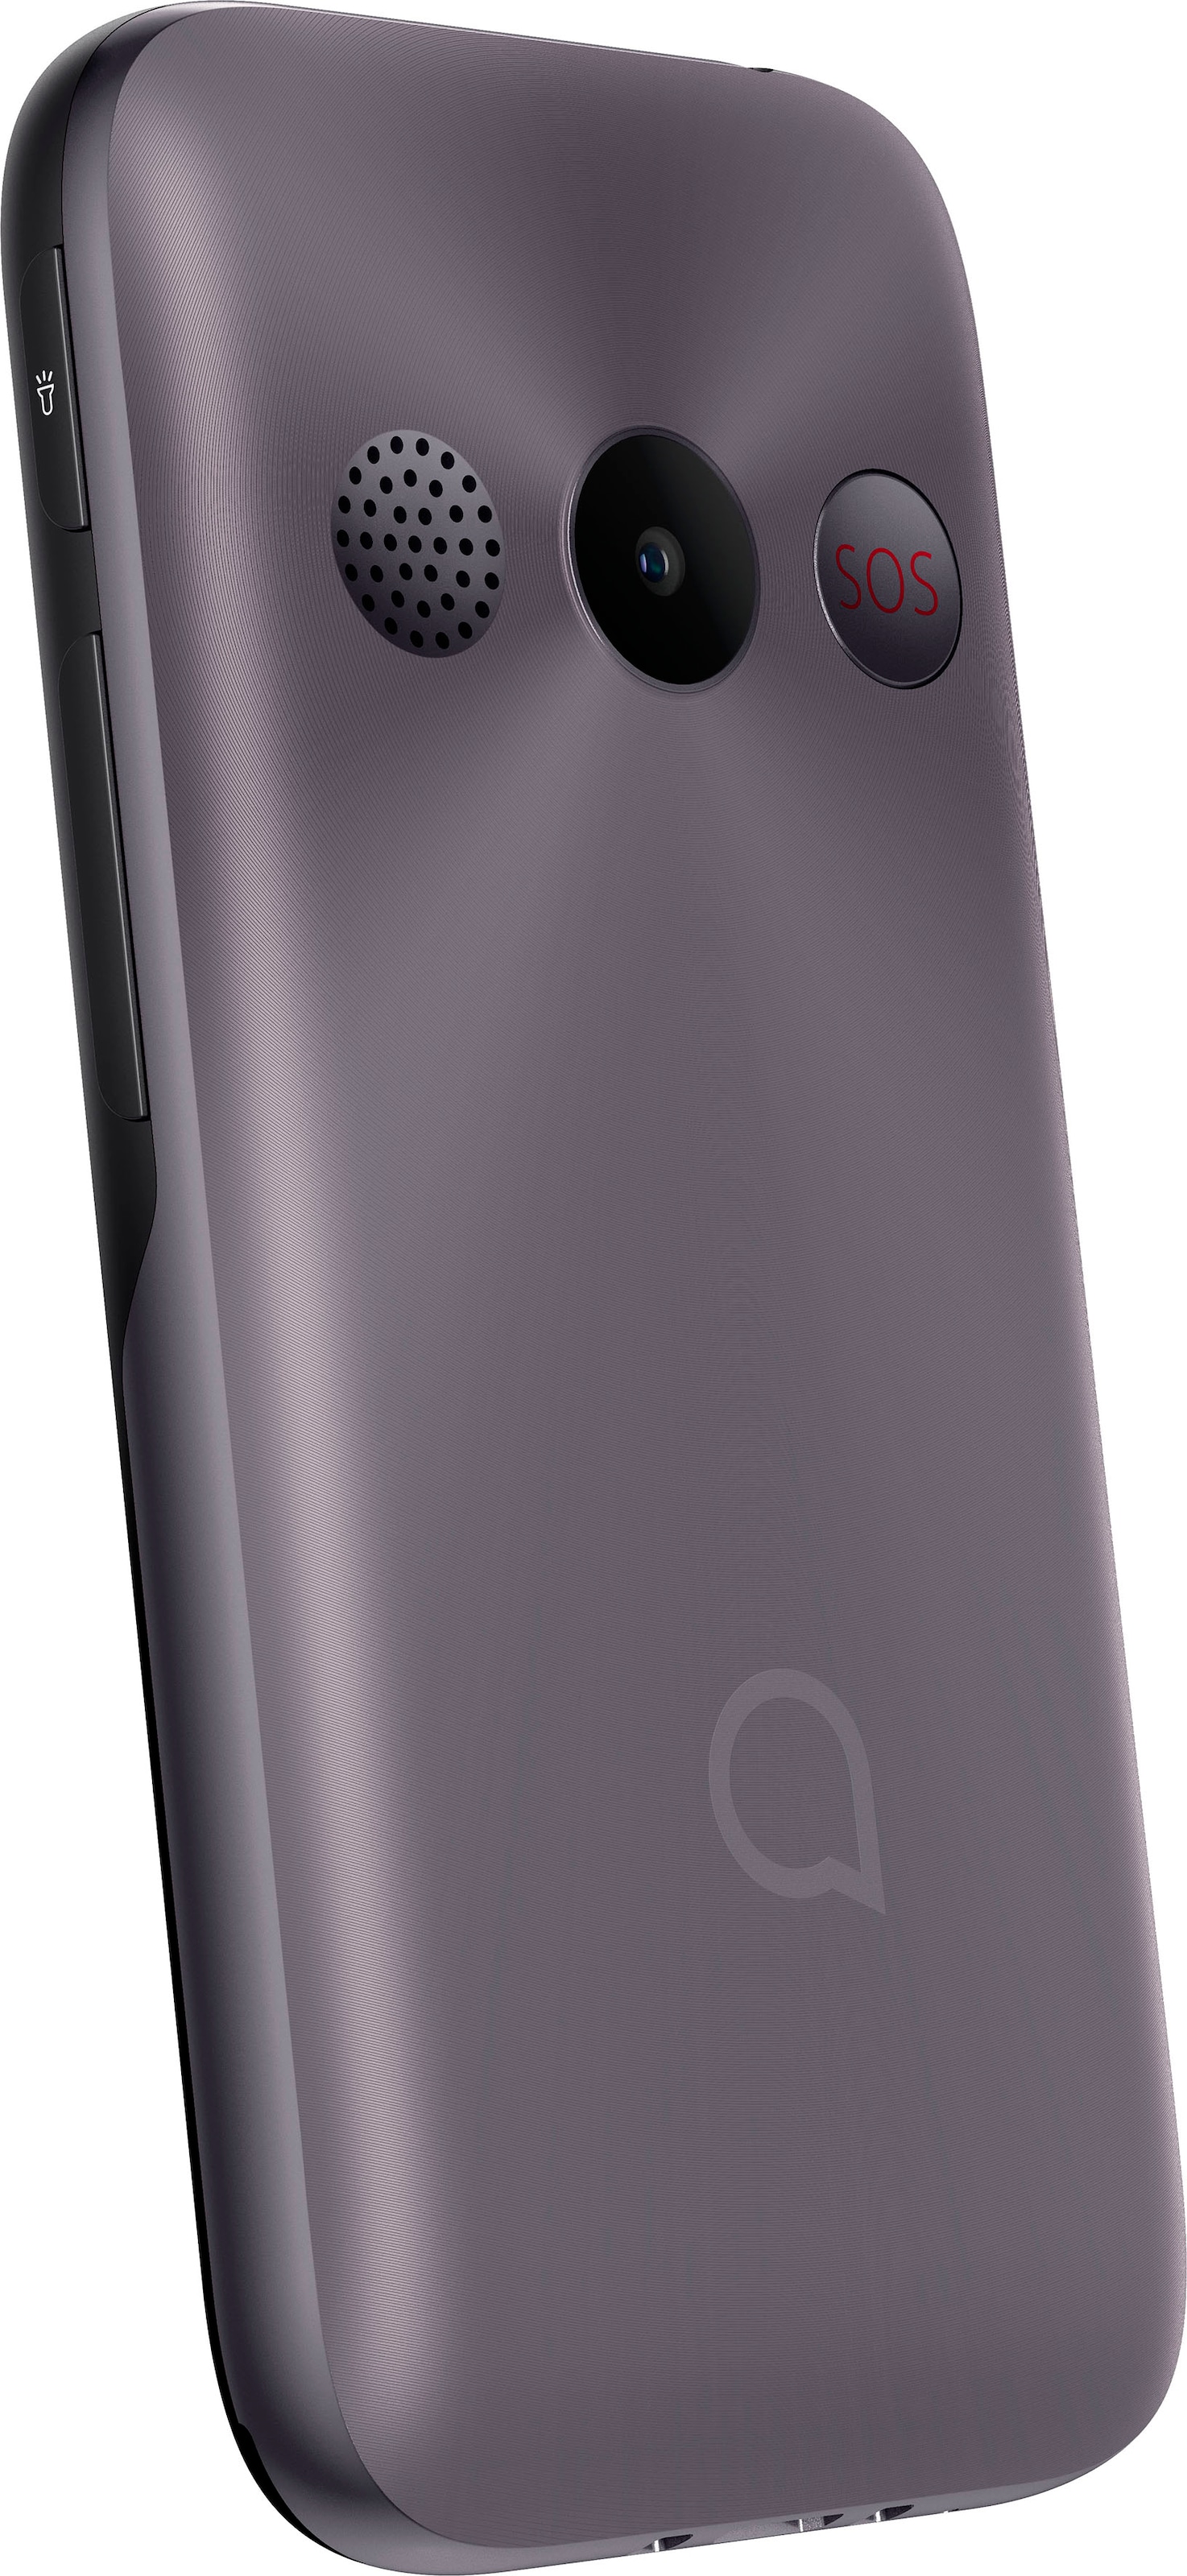 Alcatel Handy »2020«, kaufen Rechnung 6,10 cm/2,4 Zoll auf Gray, Metallic